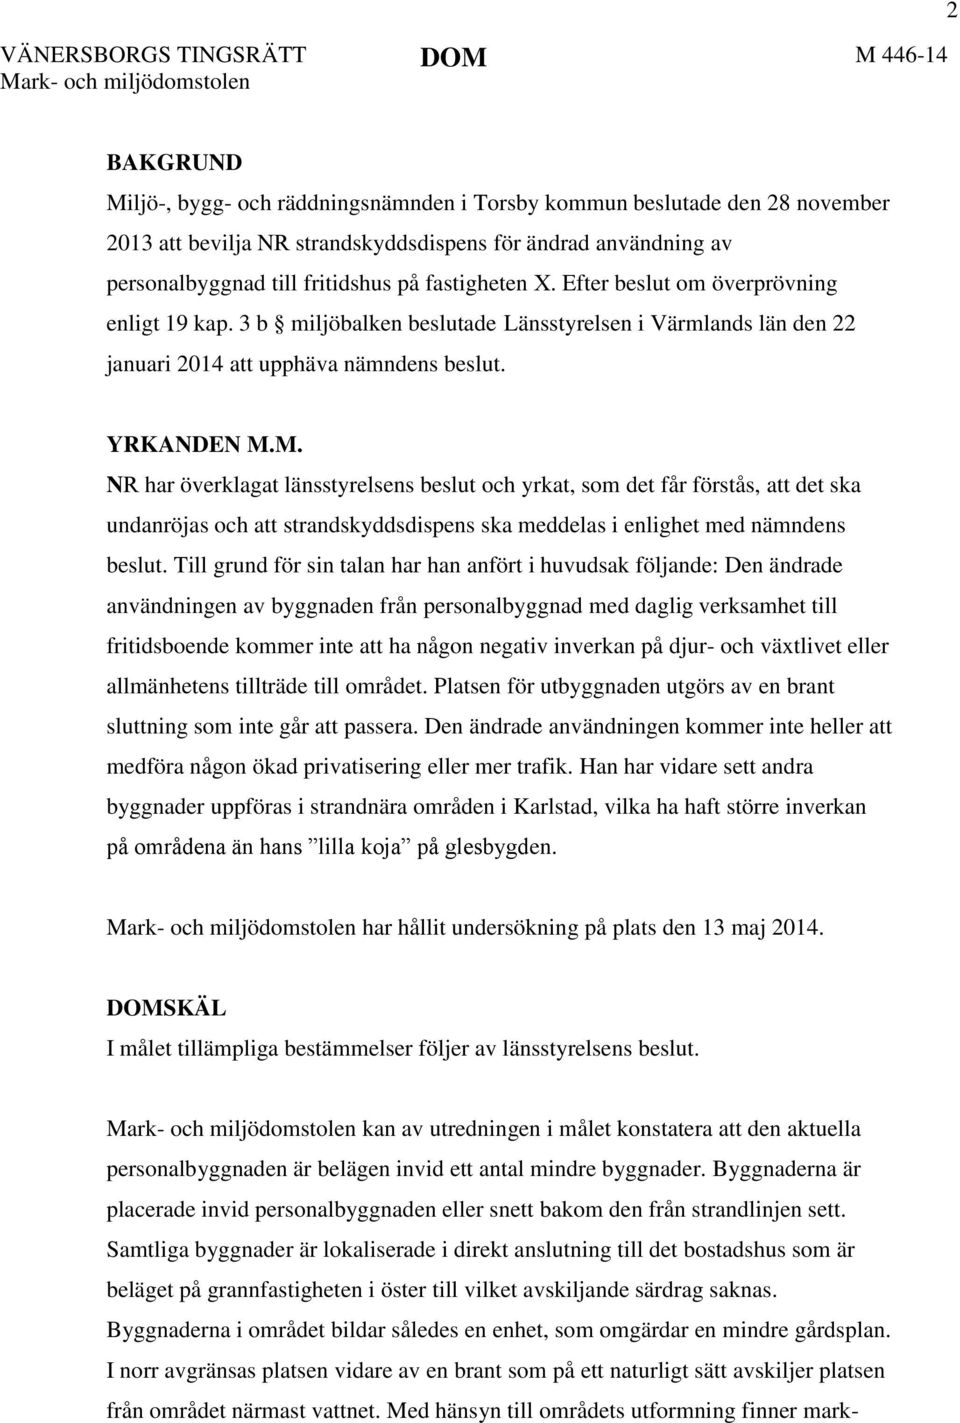 3 b miljöbalken beslutade Länsstyrelsen i Värmlands län den 22 januari 2014 att upphäva nämndens beslut. YRKANDEN M.